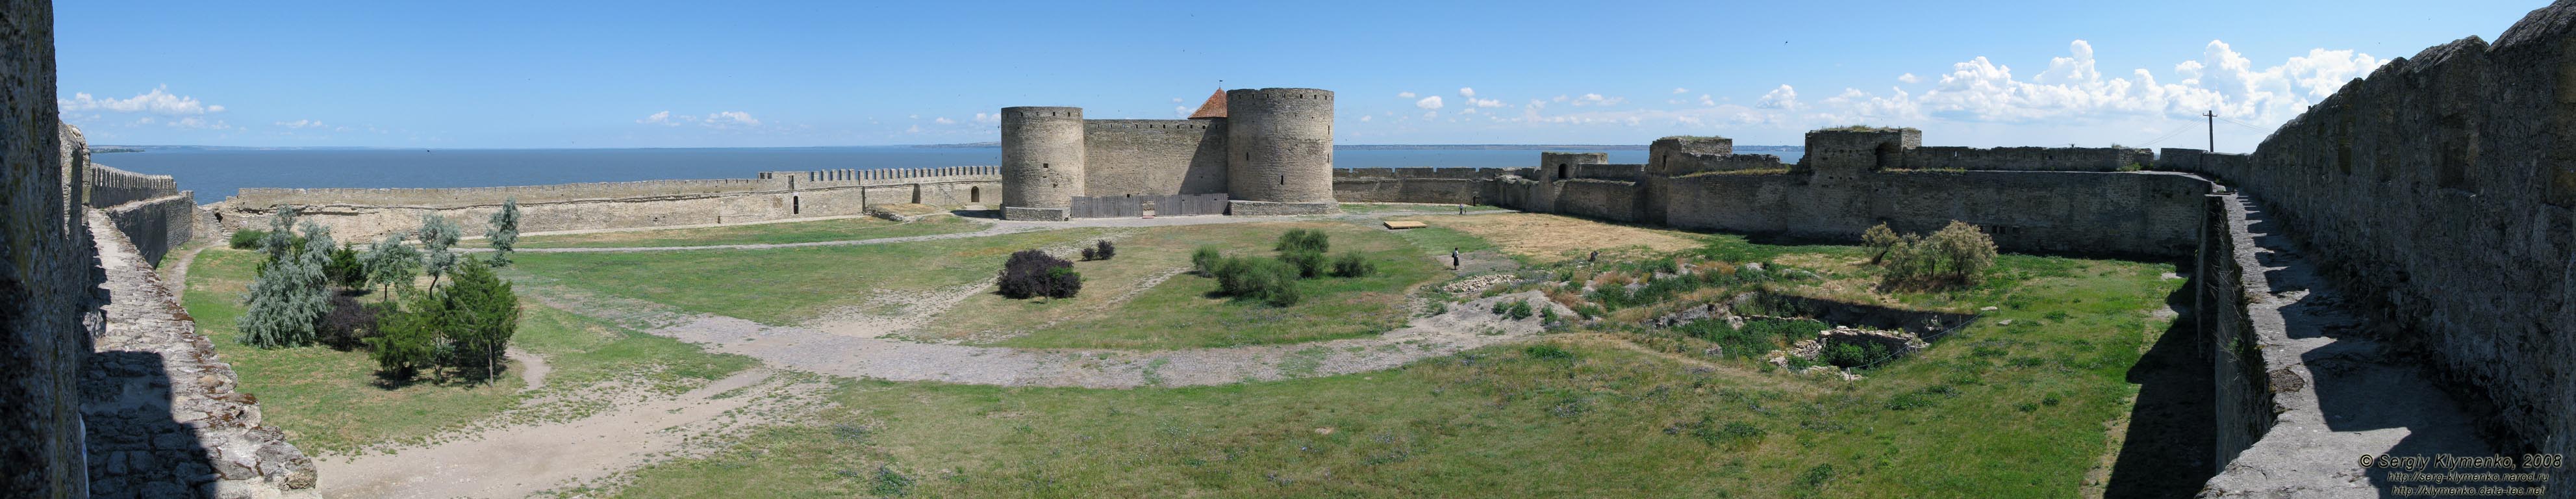 Белгород-Днестровская крепость, вид "Гарнизонного" двора от башни "Сторожевая" (панорама ~180°).